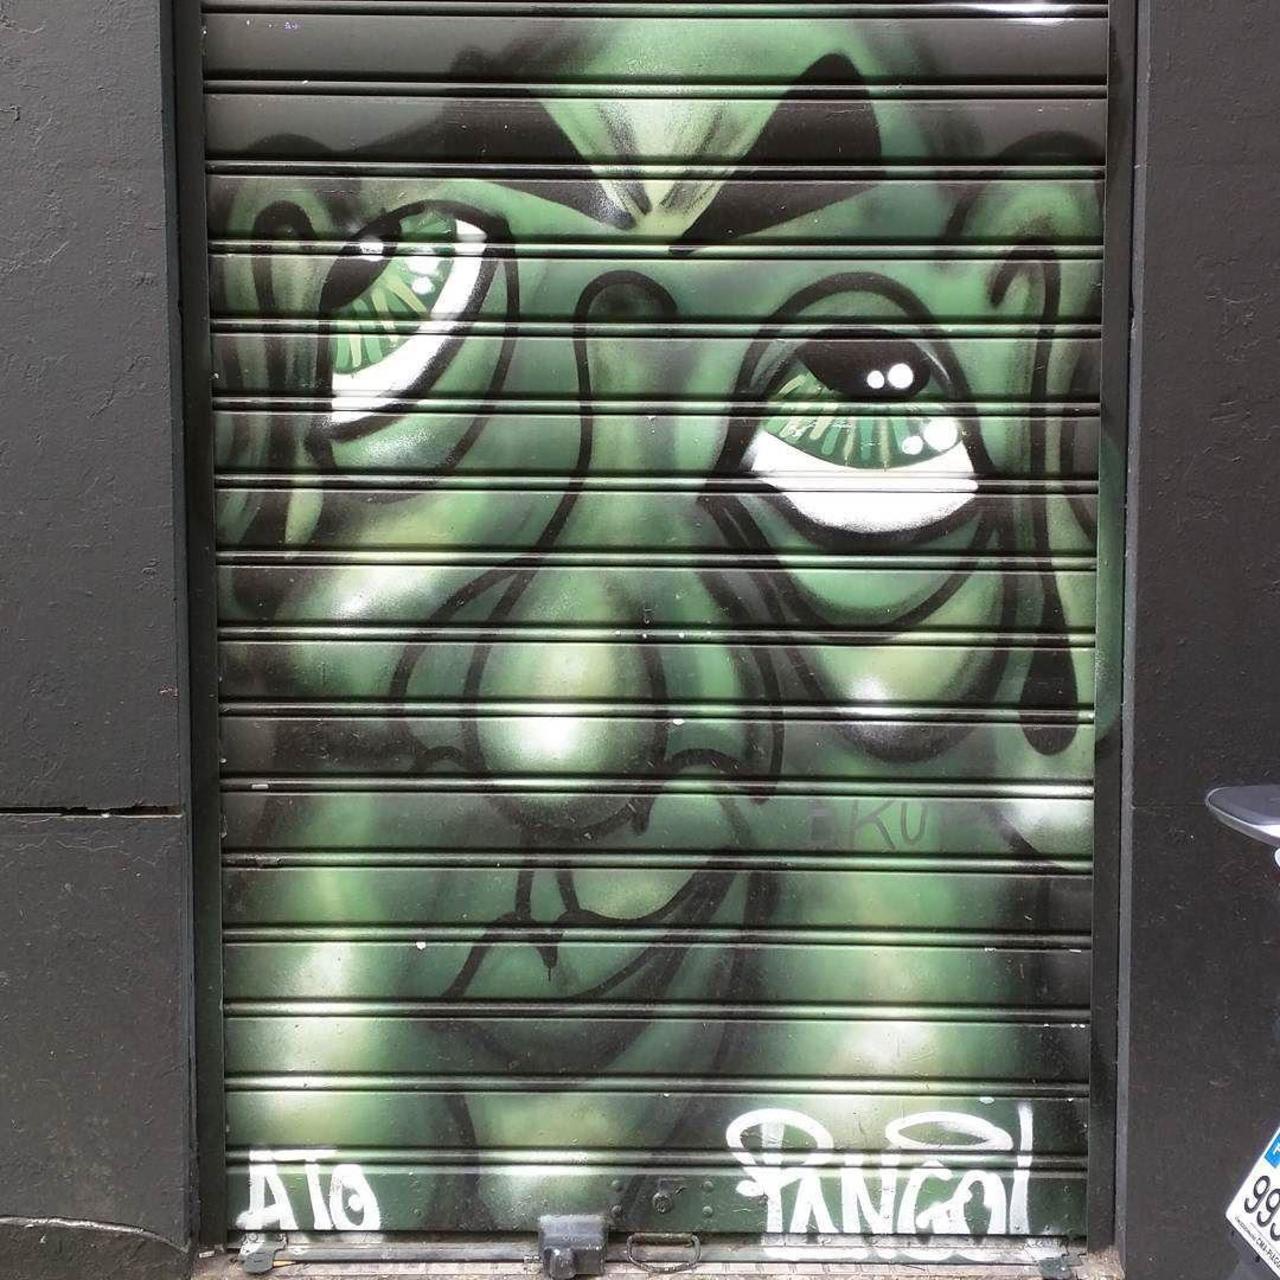 #Paris #graffiti photo by @alphaquadra http://ift.tt/1Ne5Rtu #StreetArt http://t.co/M0nIgbb2yN